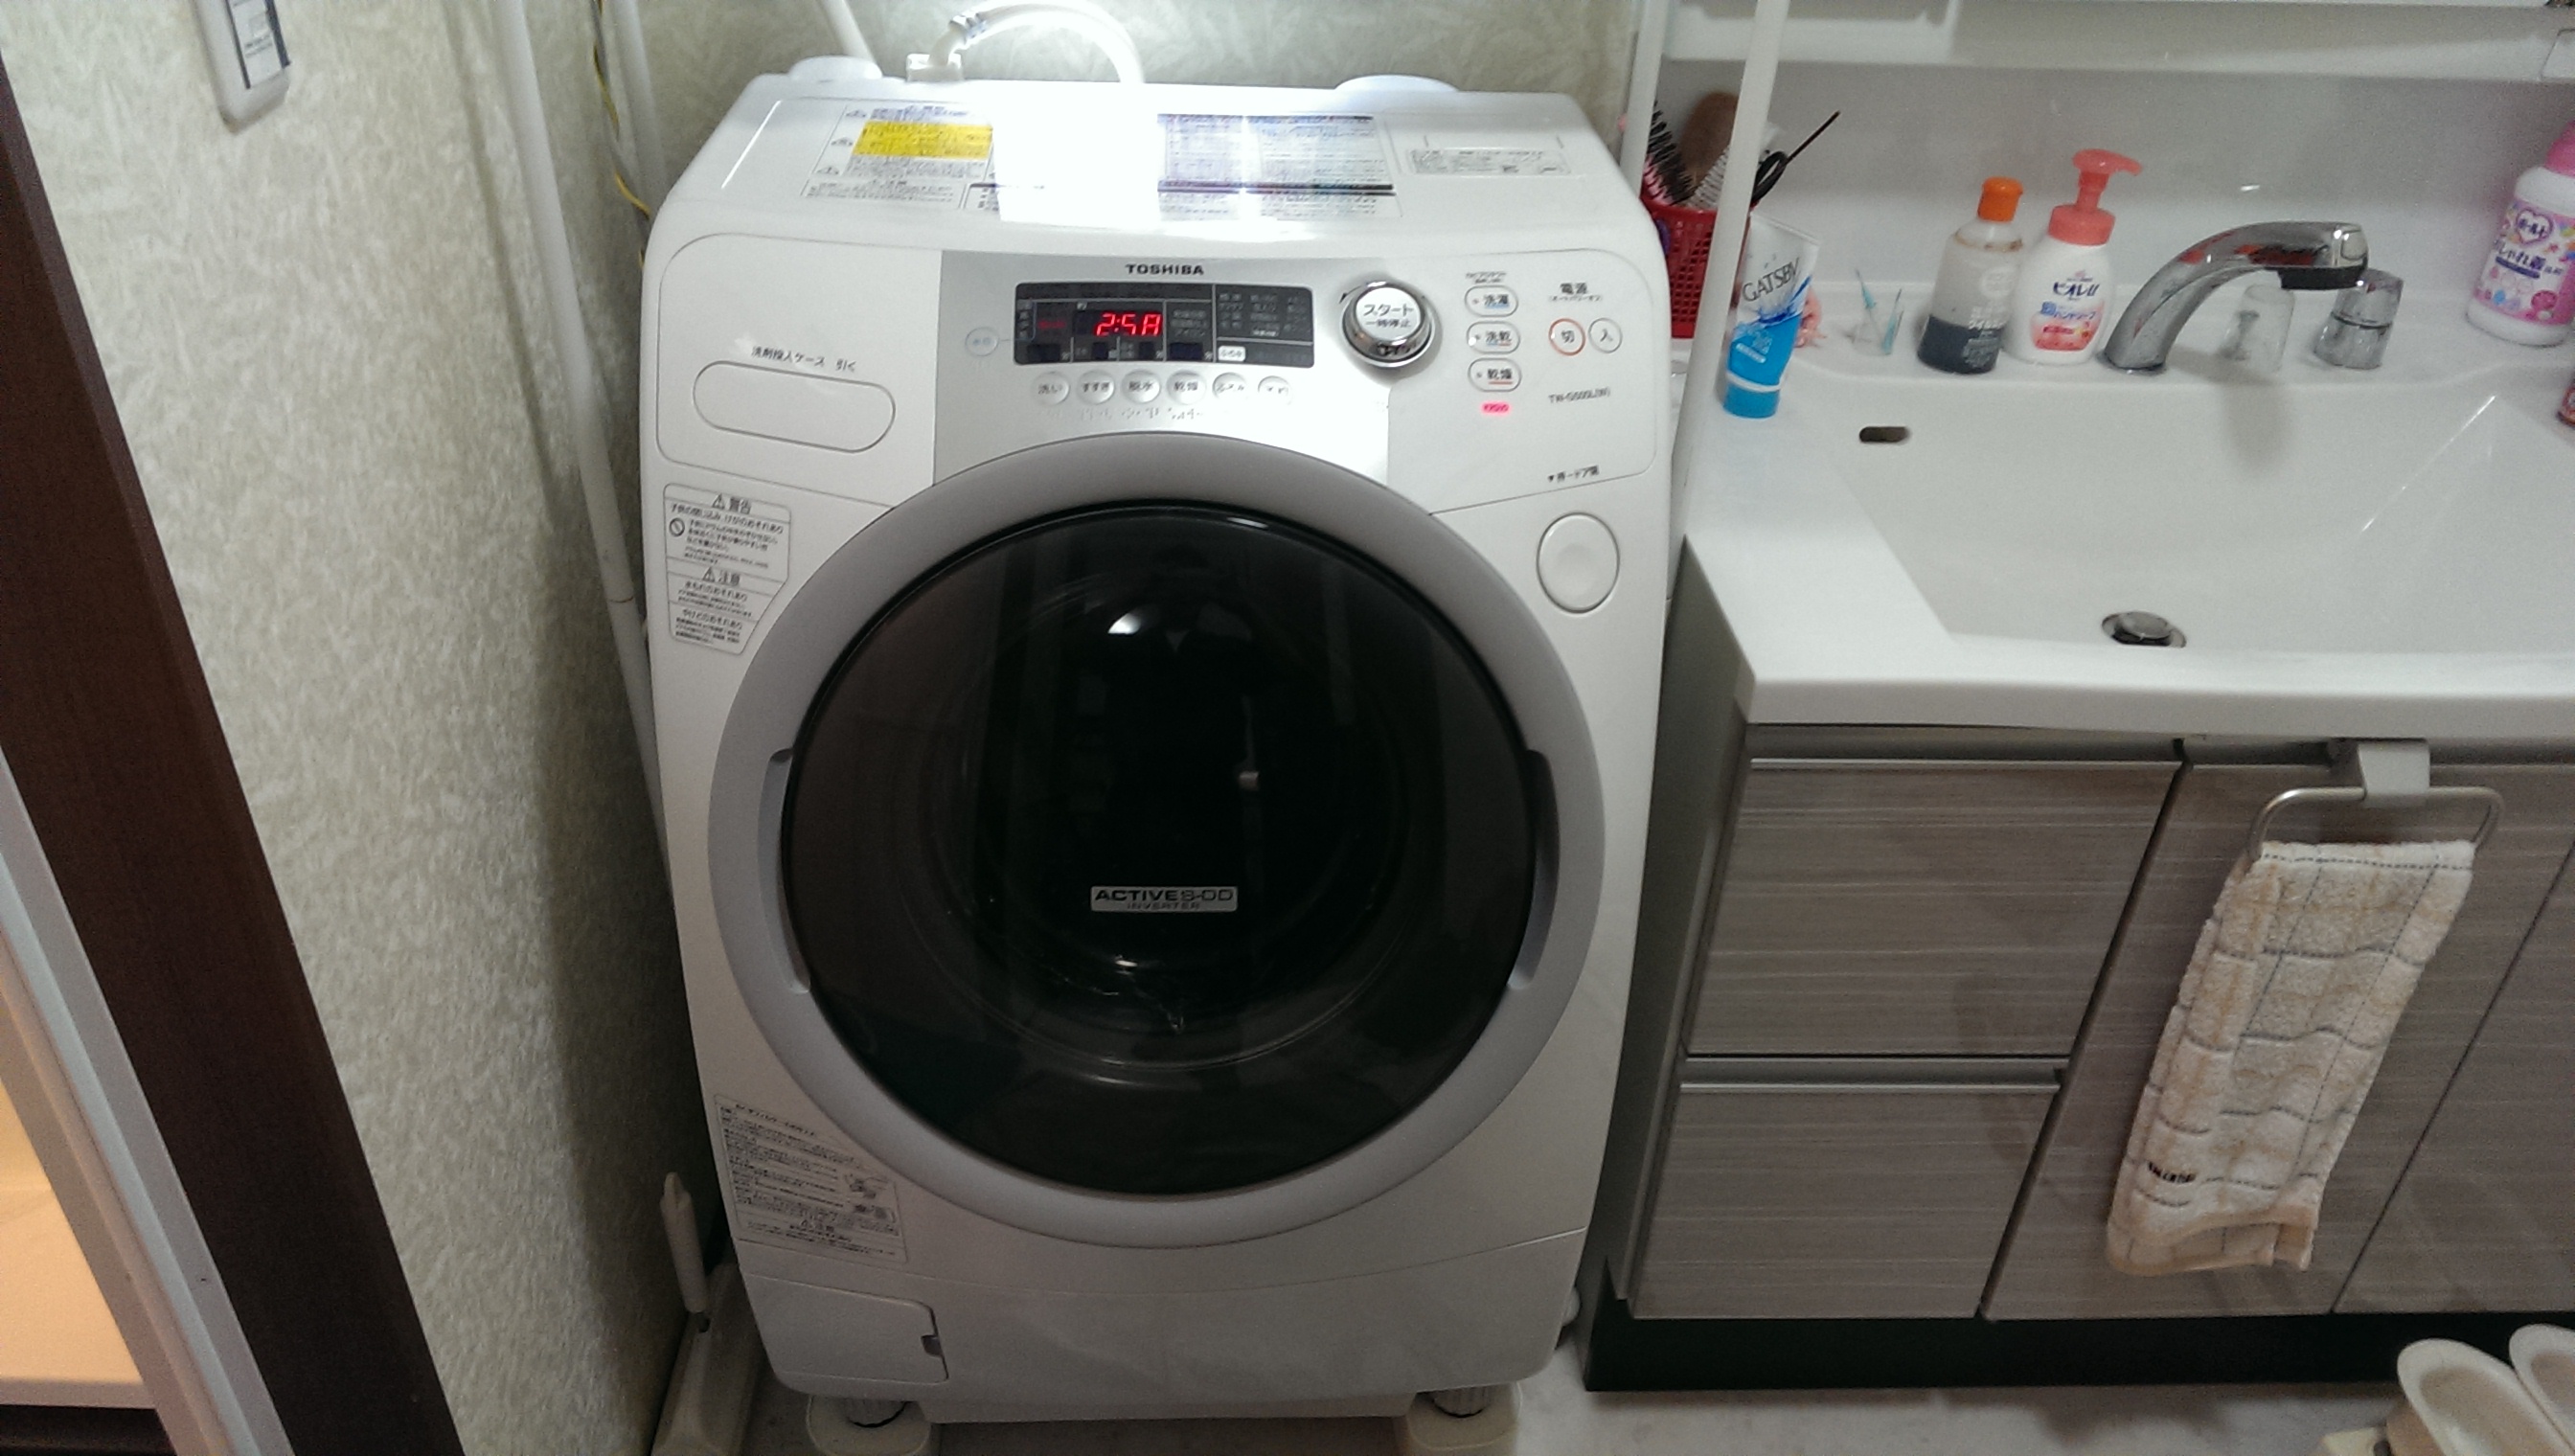 安城市 東芝製ドラム式洗濯機(TWG500L)分解清掃 : 名古屋の家電修理とドラム式洗濯機分解清掃の便利屋修助サポート